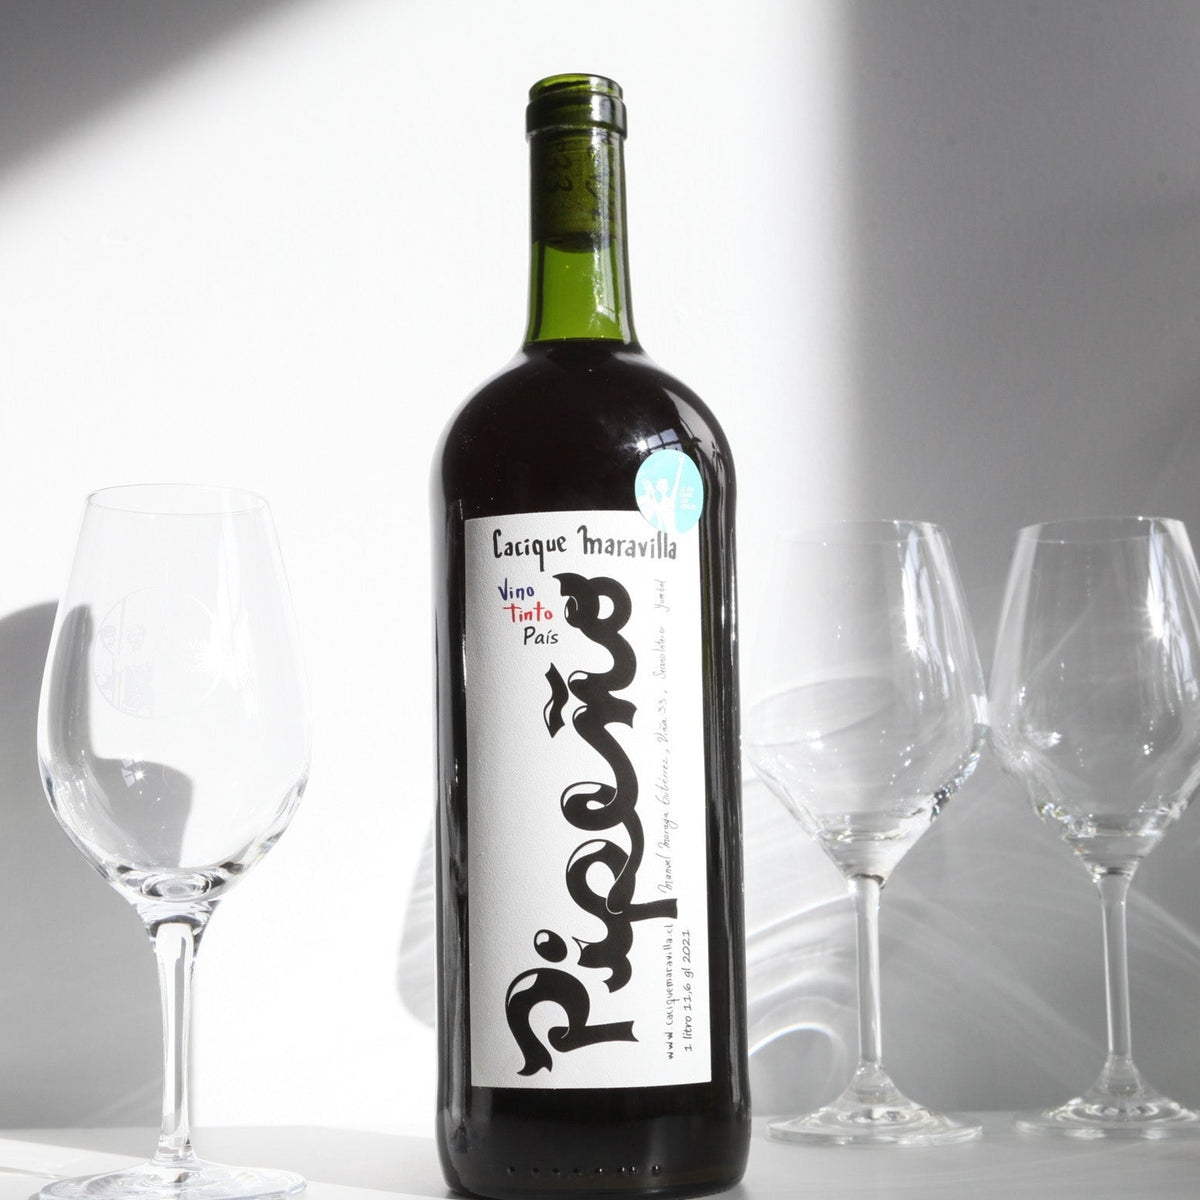 Bouteille de vin rouge nature du Chili du domaine Cacique Maravilla: Pipeno 1 litre.